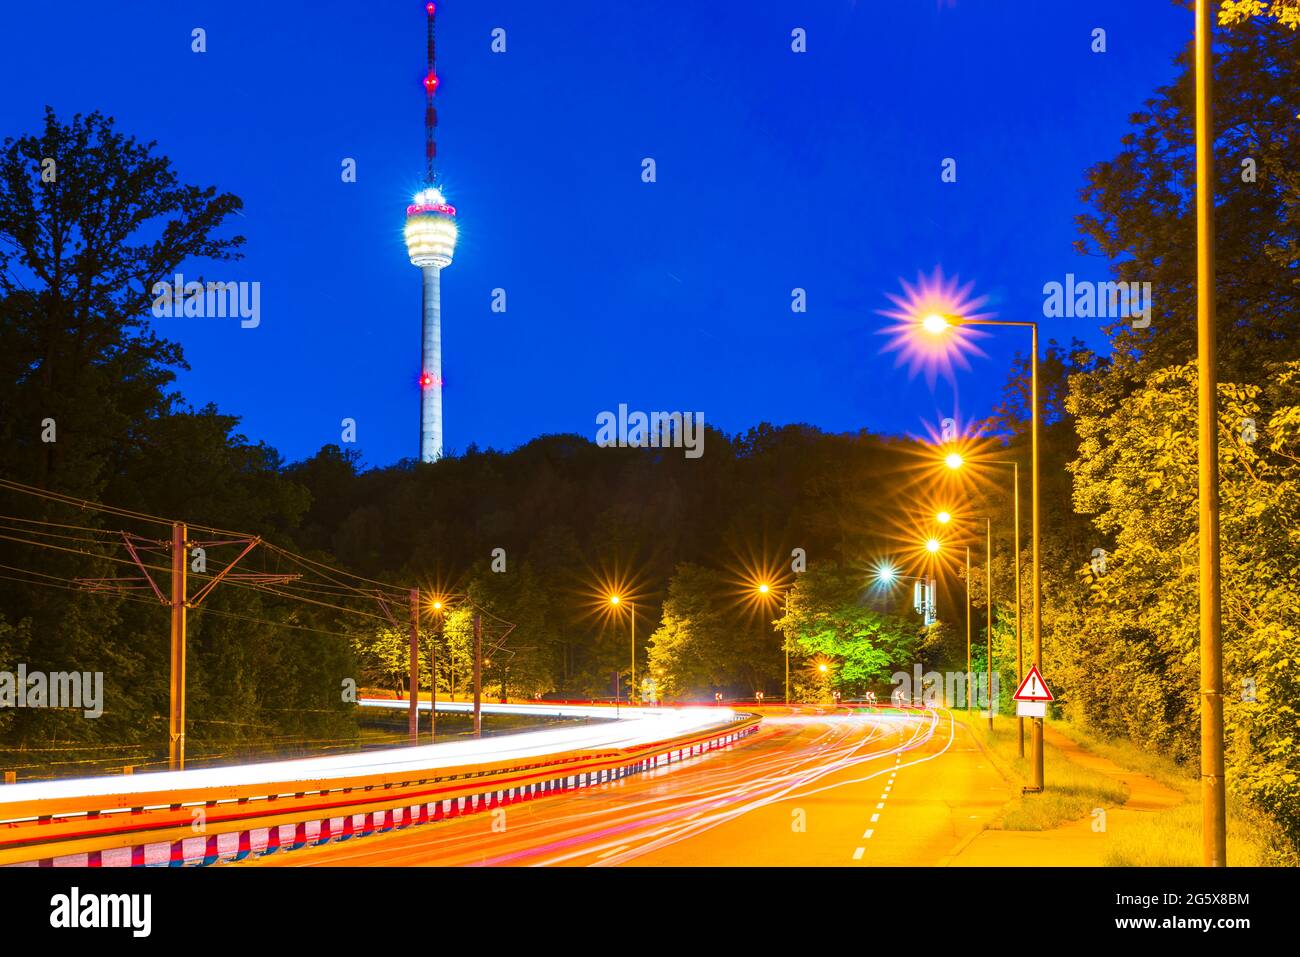 Alemania, Noche en la ciudad de stuttgart, calles iluminadas con tráfico que conducen al famoso edificio de la torre de televisión del horizonte Foto de stock